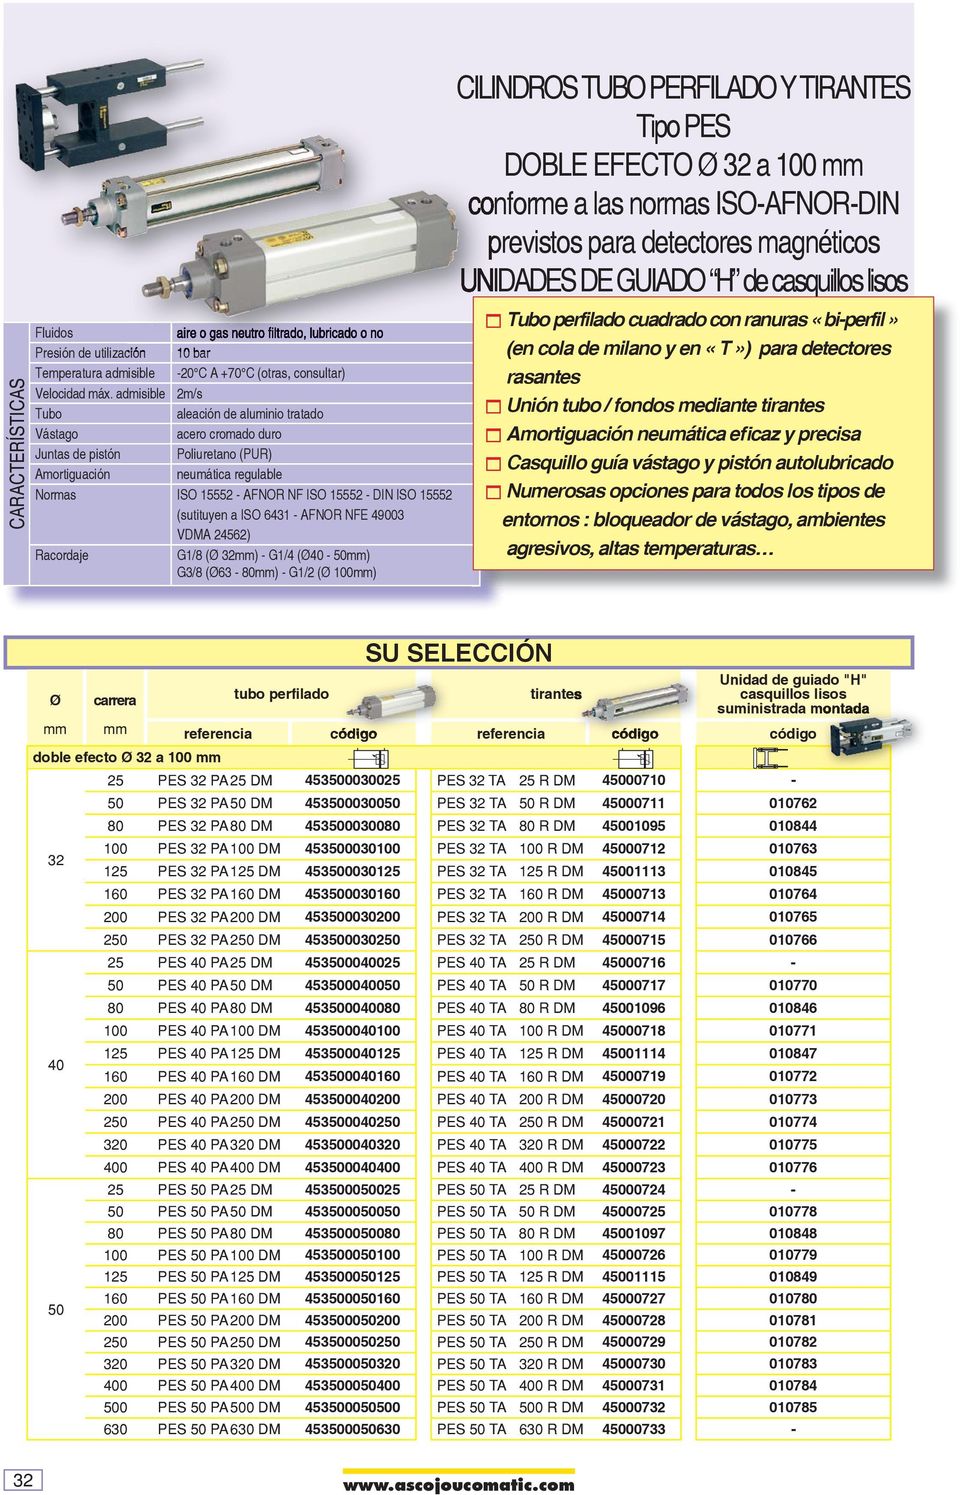 duro Juntas de pistón Poliuretano (PUR) Amortiguación neumática regulable Normas ISO 5552 - AFNOR NF ISO 5552 - DIN ISO 5552 (sutituyen a ISO 64 - AFNOR NF 4900 VDMA 24562) Racordaje G/8 ( 2) - G/4